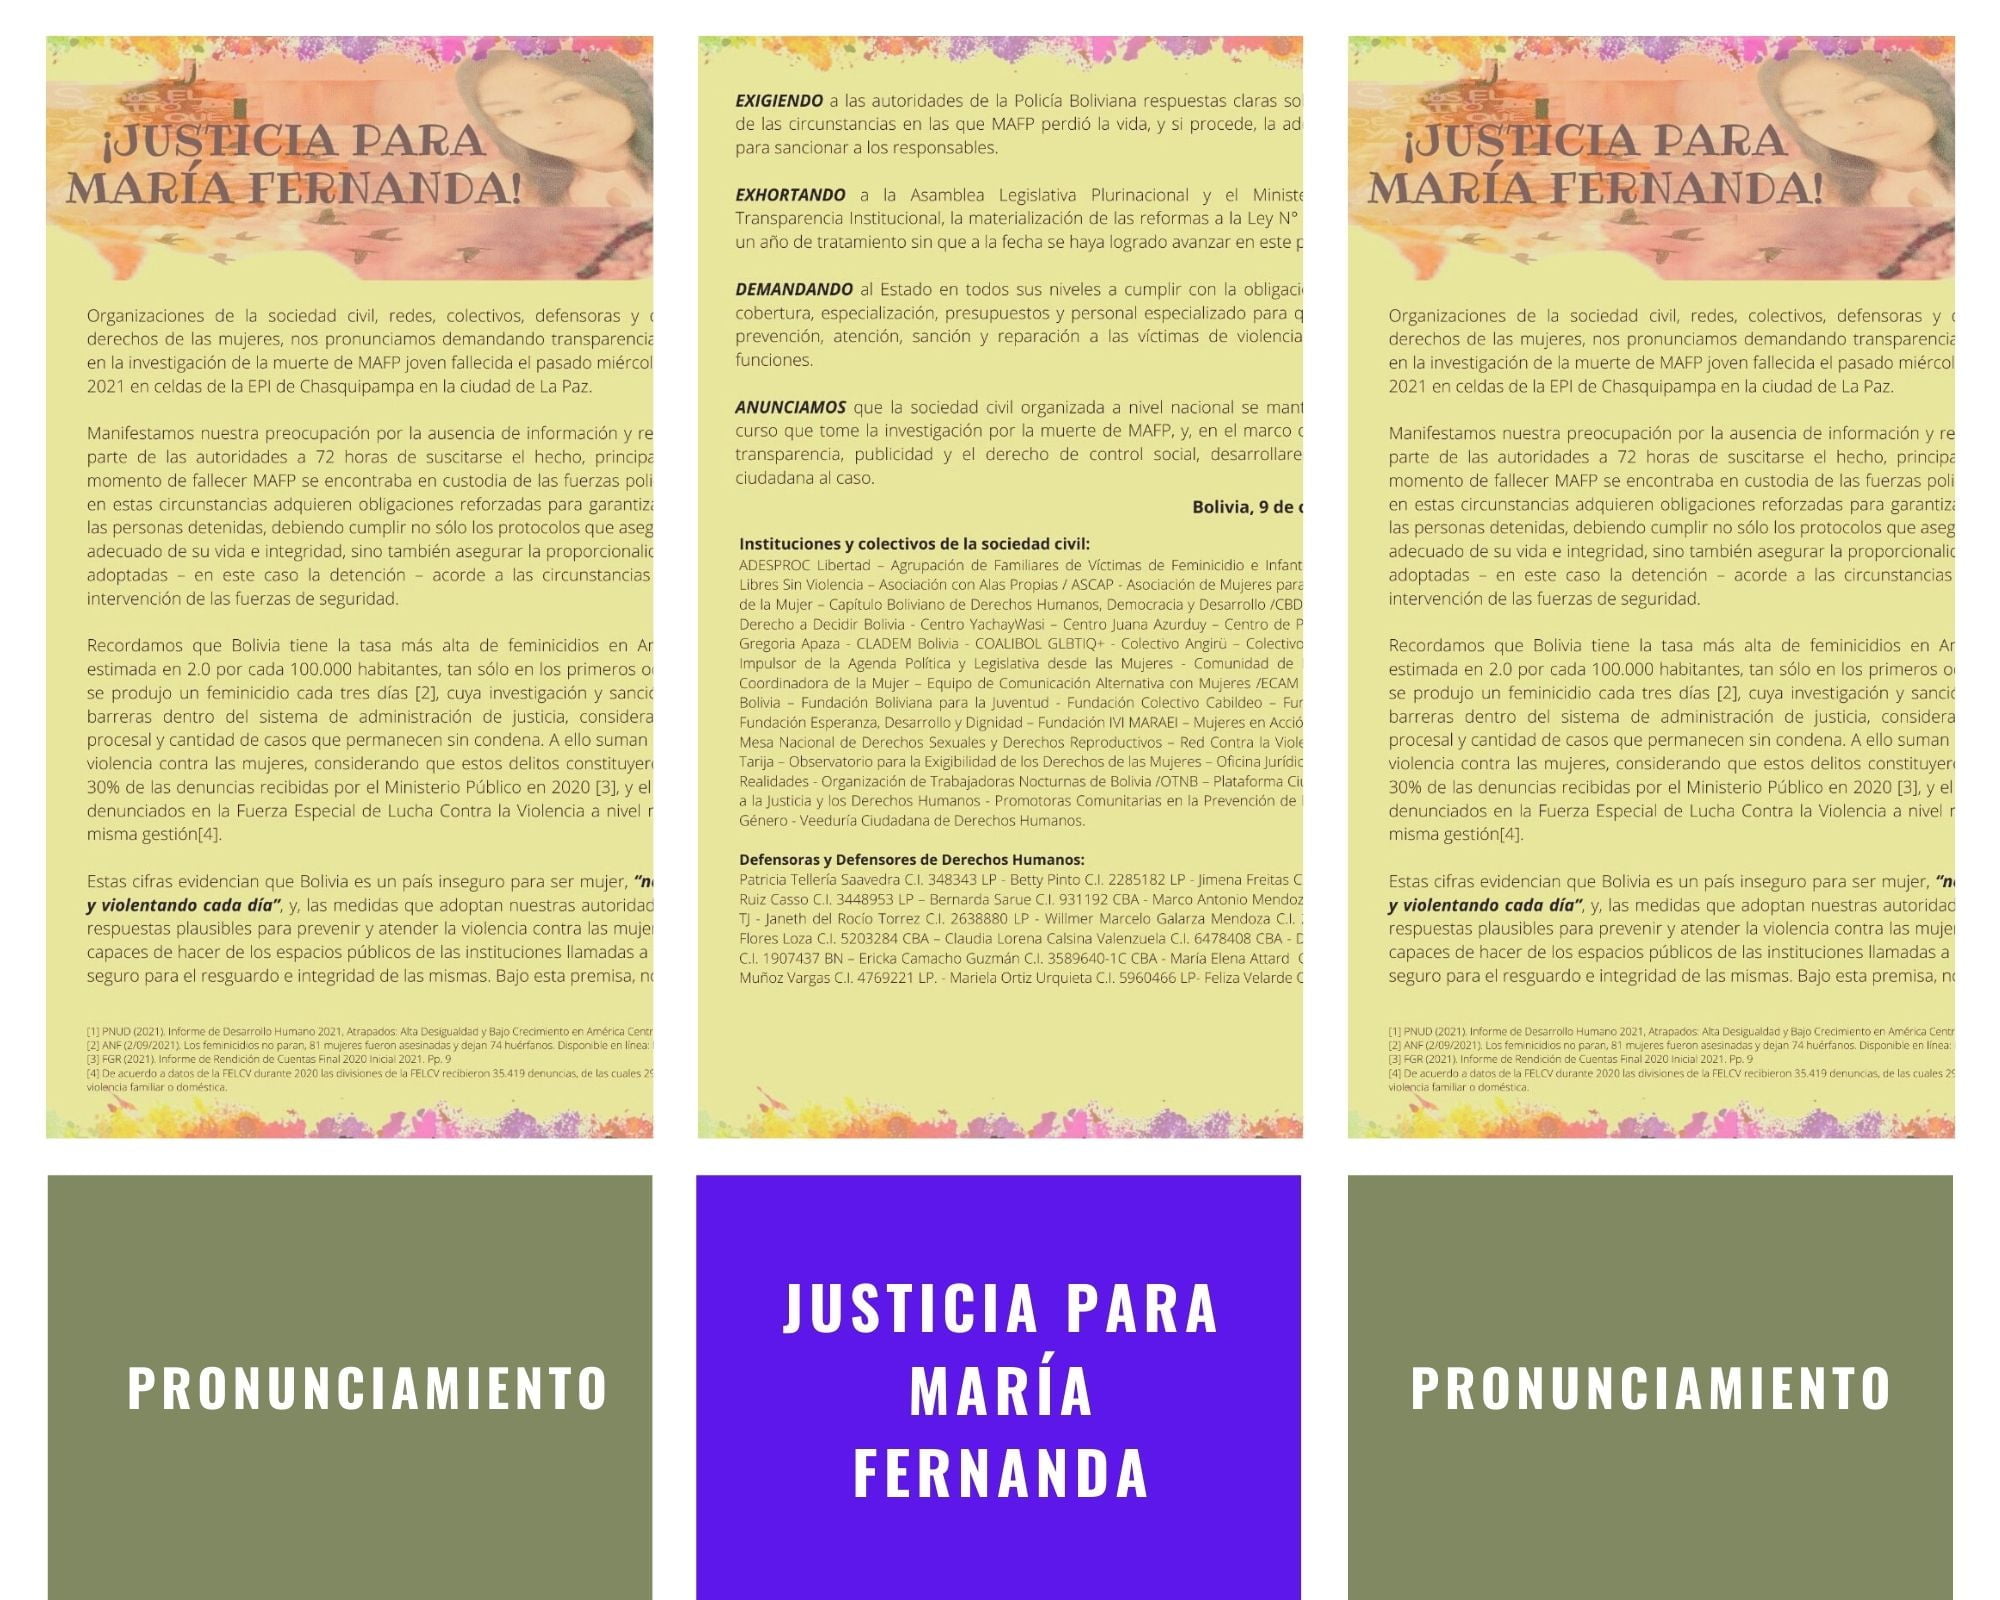 Justicia para María Fernanda